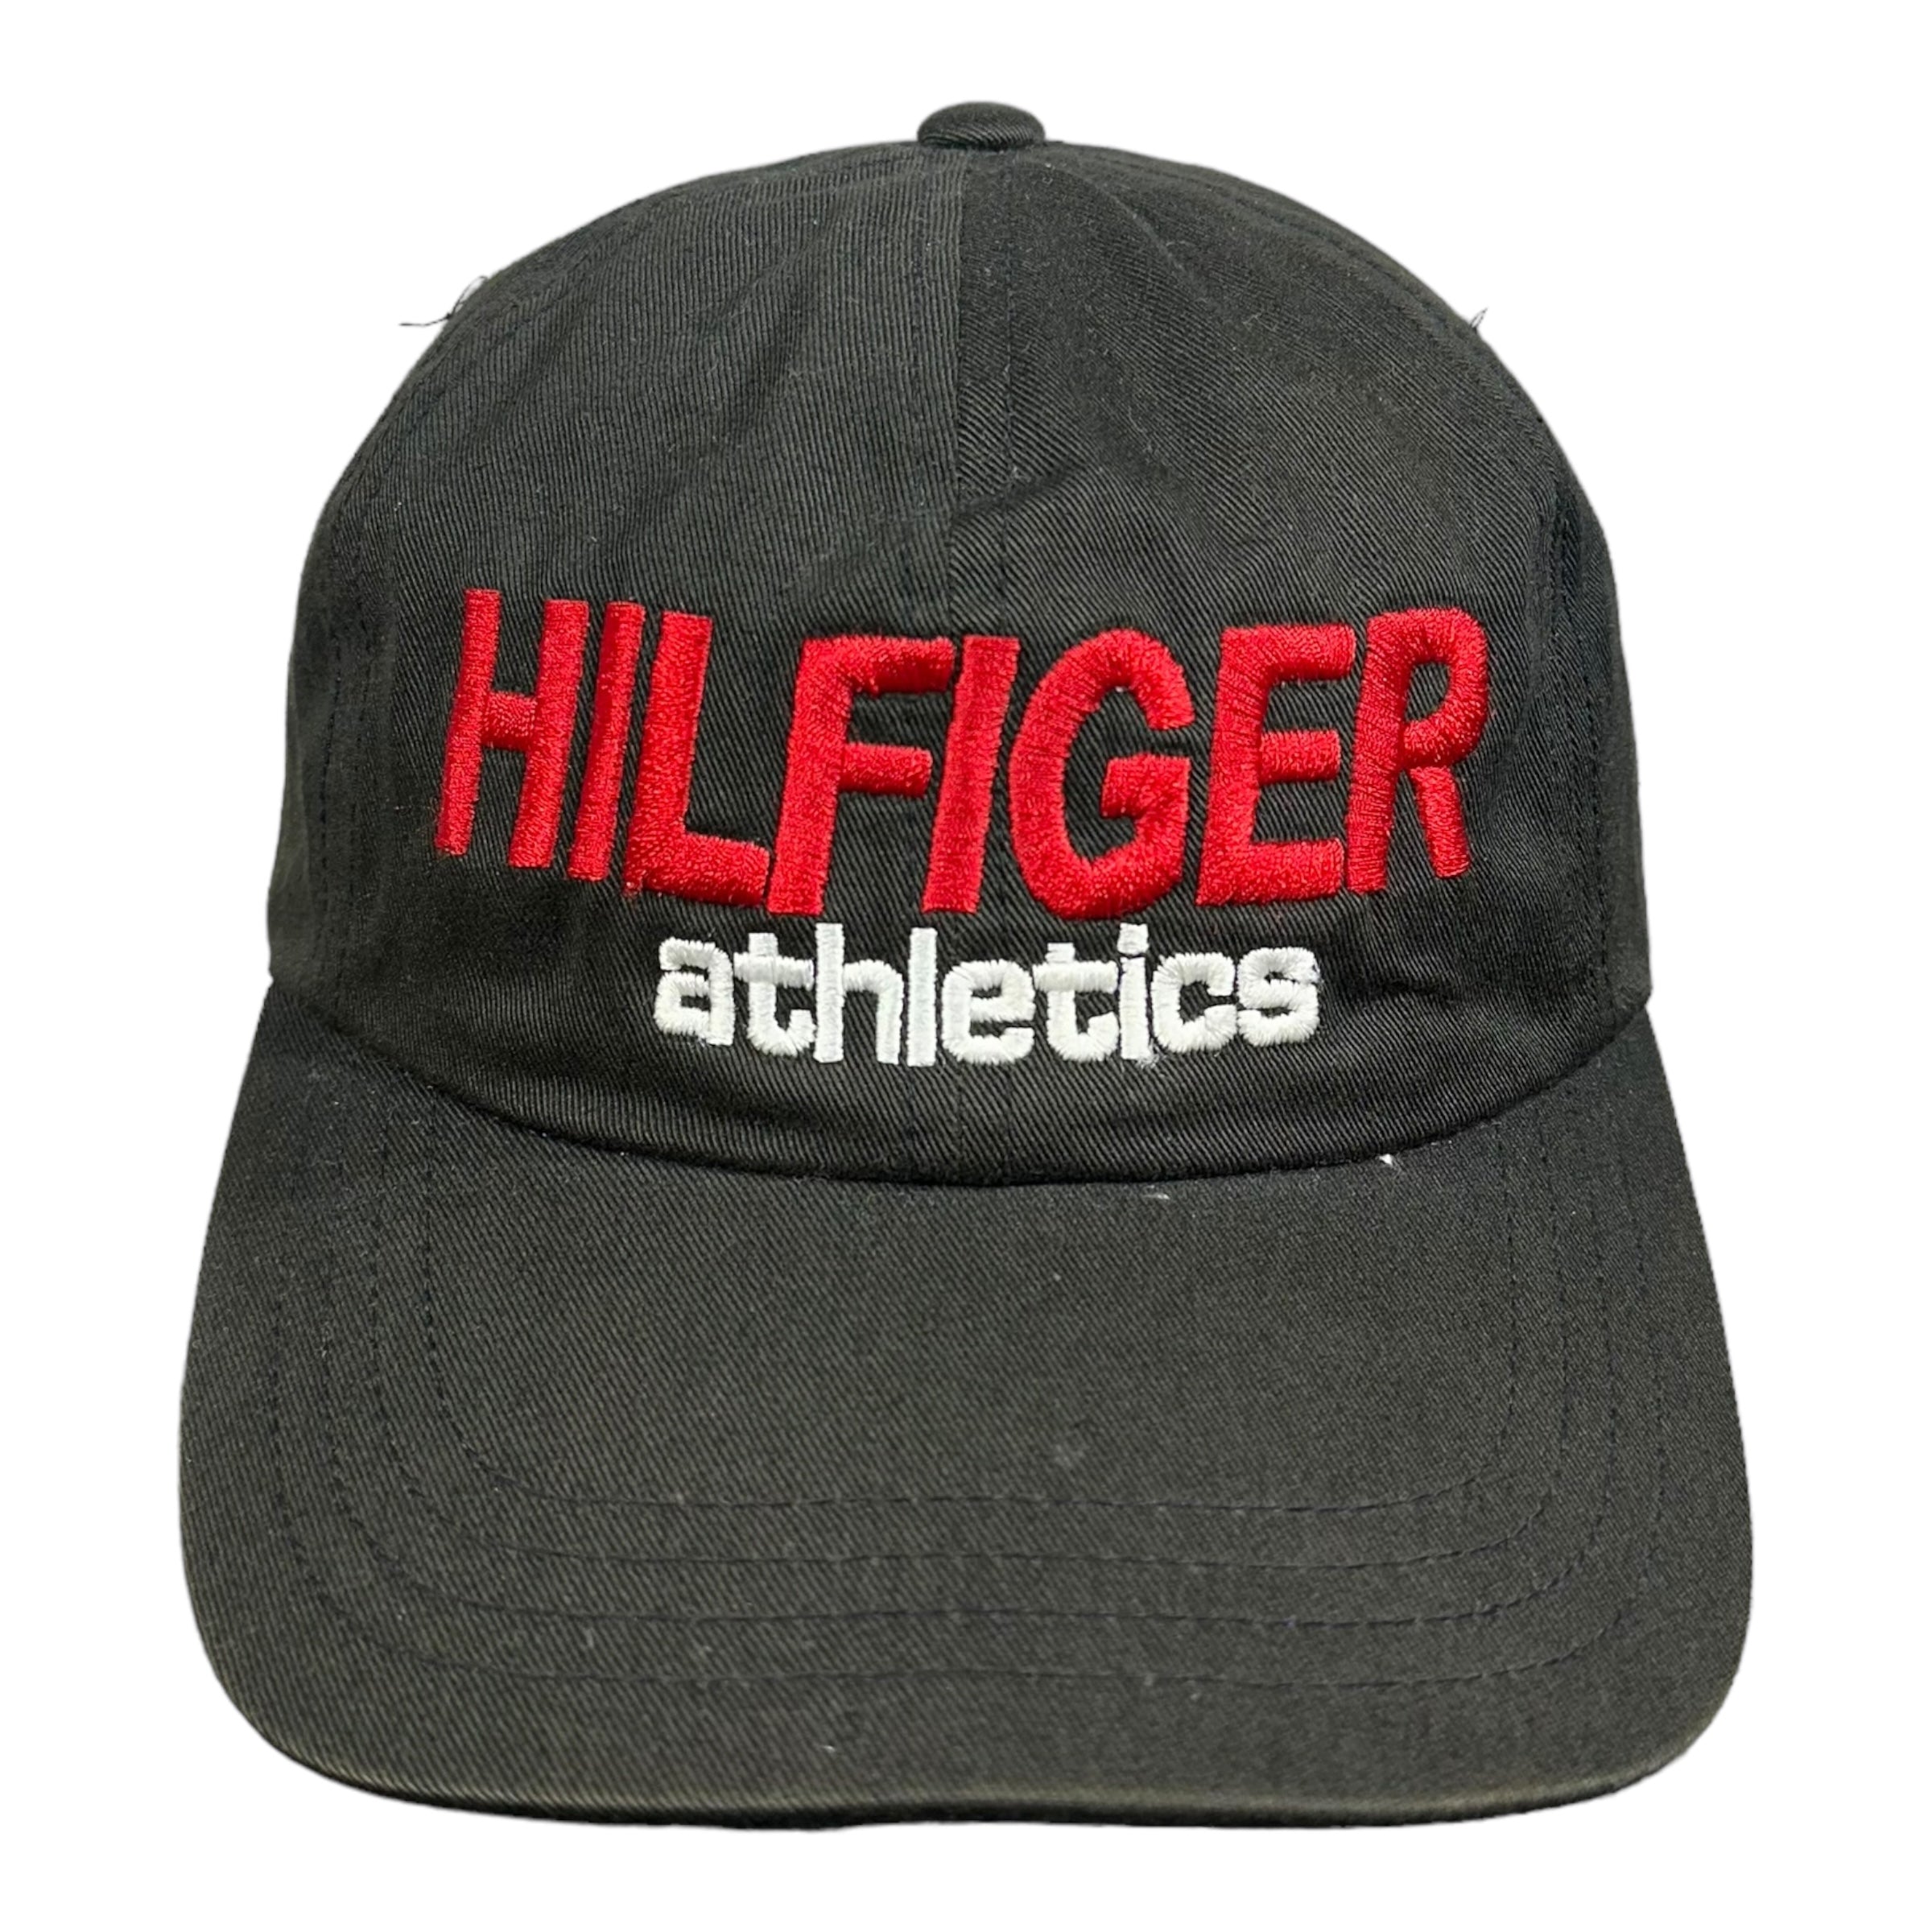 Vintage Tommy Hilfiger Athletics Strapback Dad Hat